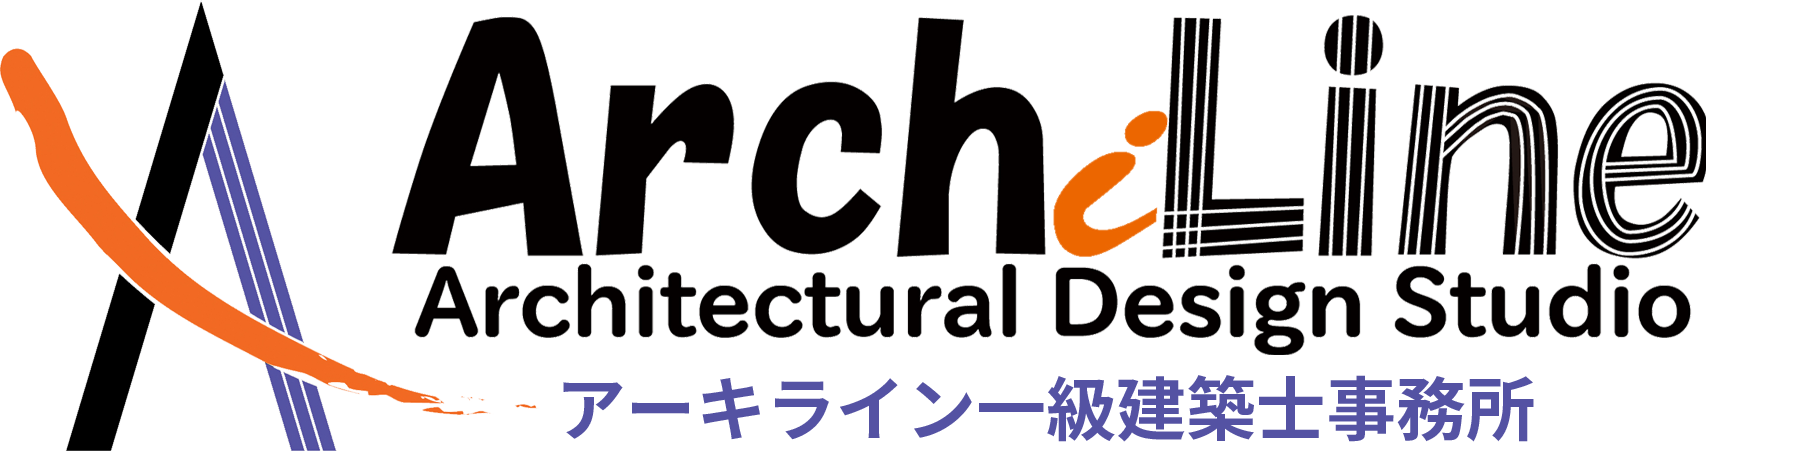 アーキライン一級建築士事務所は、福岡県遠賀郡にて建築設計デザイン・監理から設備調査などを行う設計事務所です。